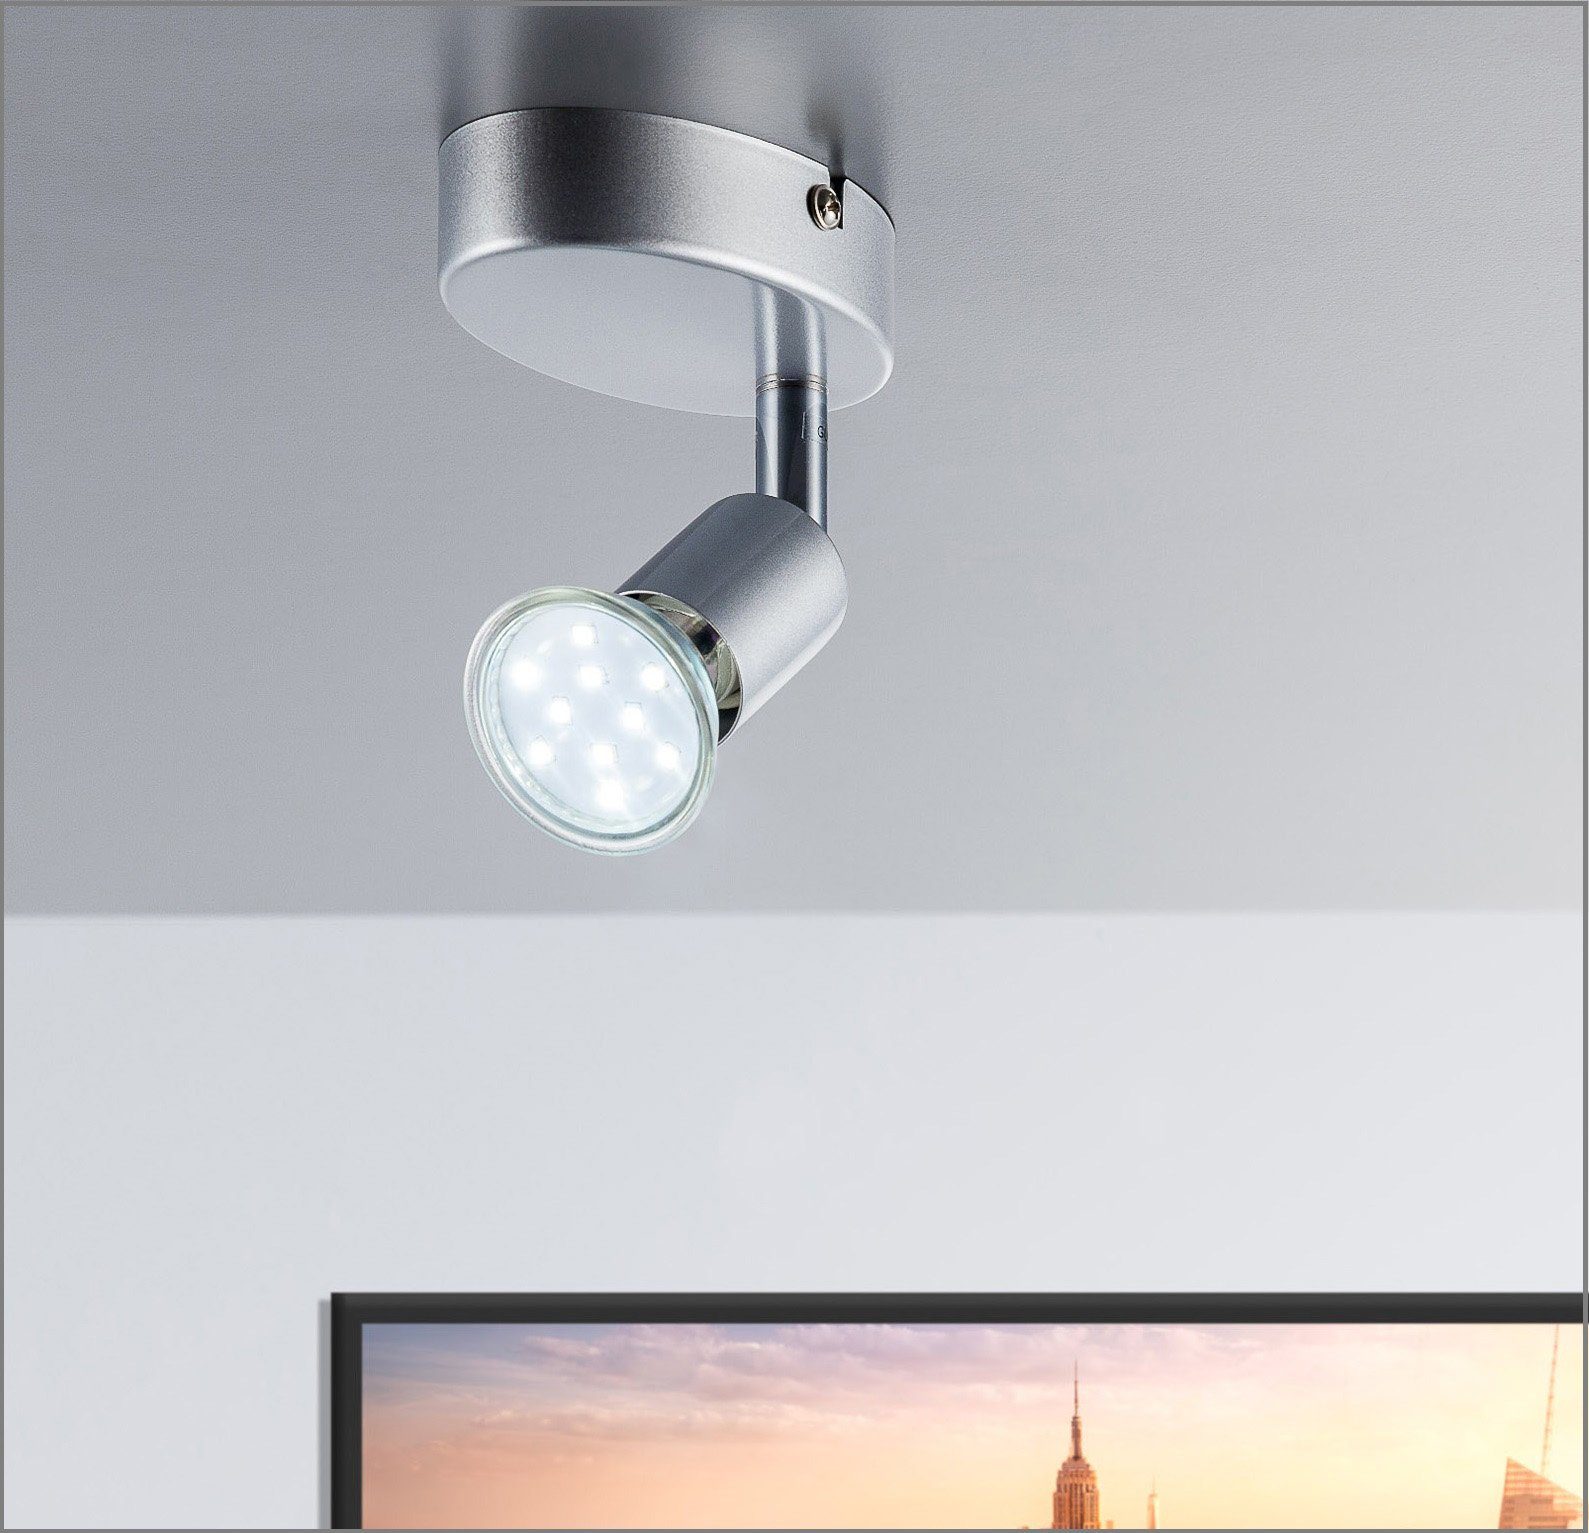 Wohnzimmer LED wechselbar, Deckenleuchte, LED LED Leuchte GU10 B.K.Licht Deckenlampe schwenkbar Decken-Spot Warmweiß, Metall